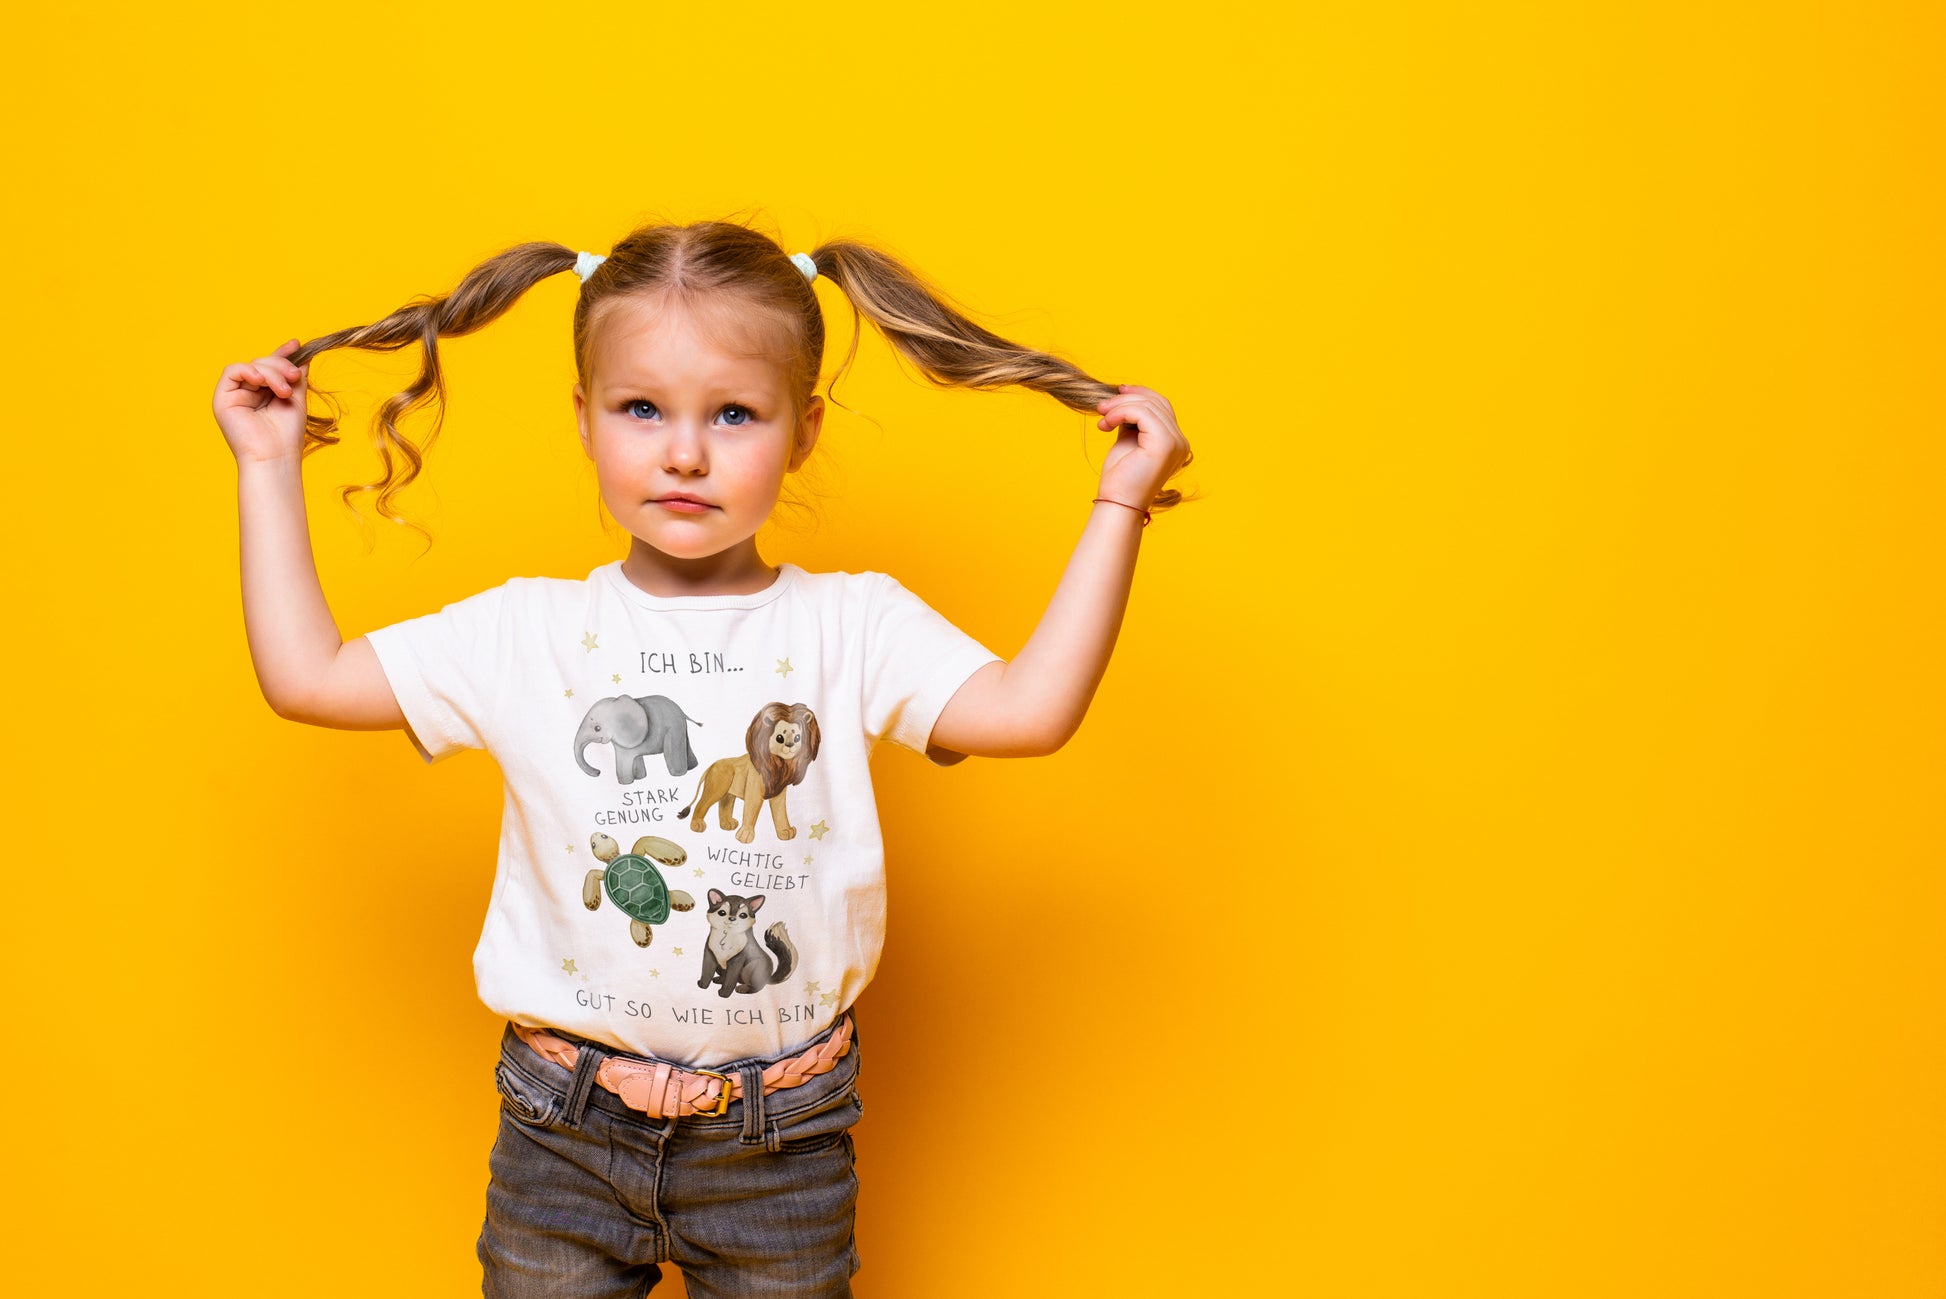 Calm Happy Kids - T-Shirt mit Affirmationen für Kleinkinder (2-5J)